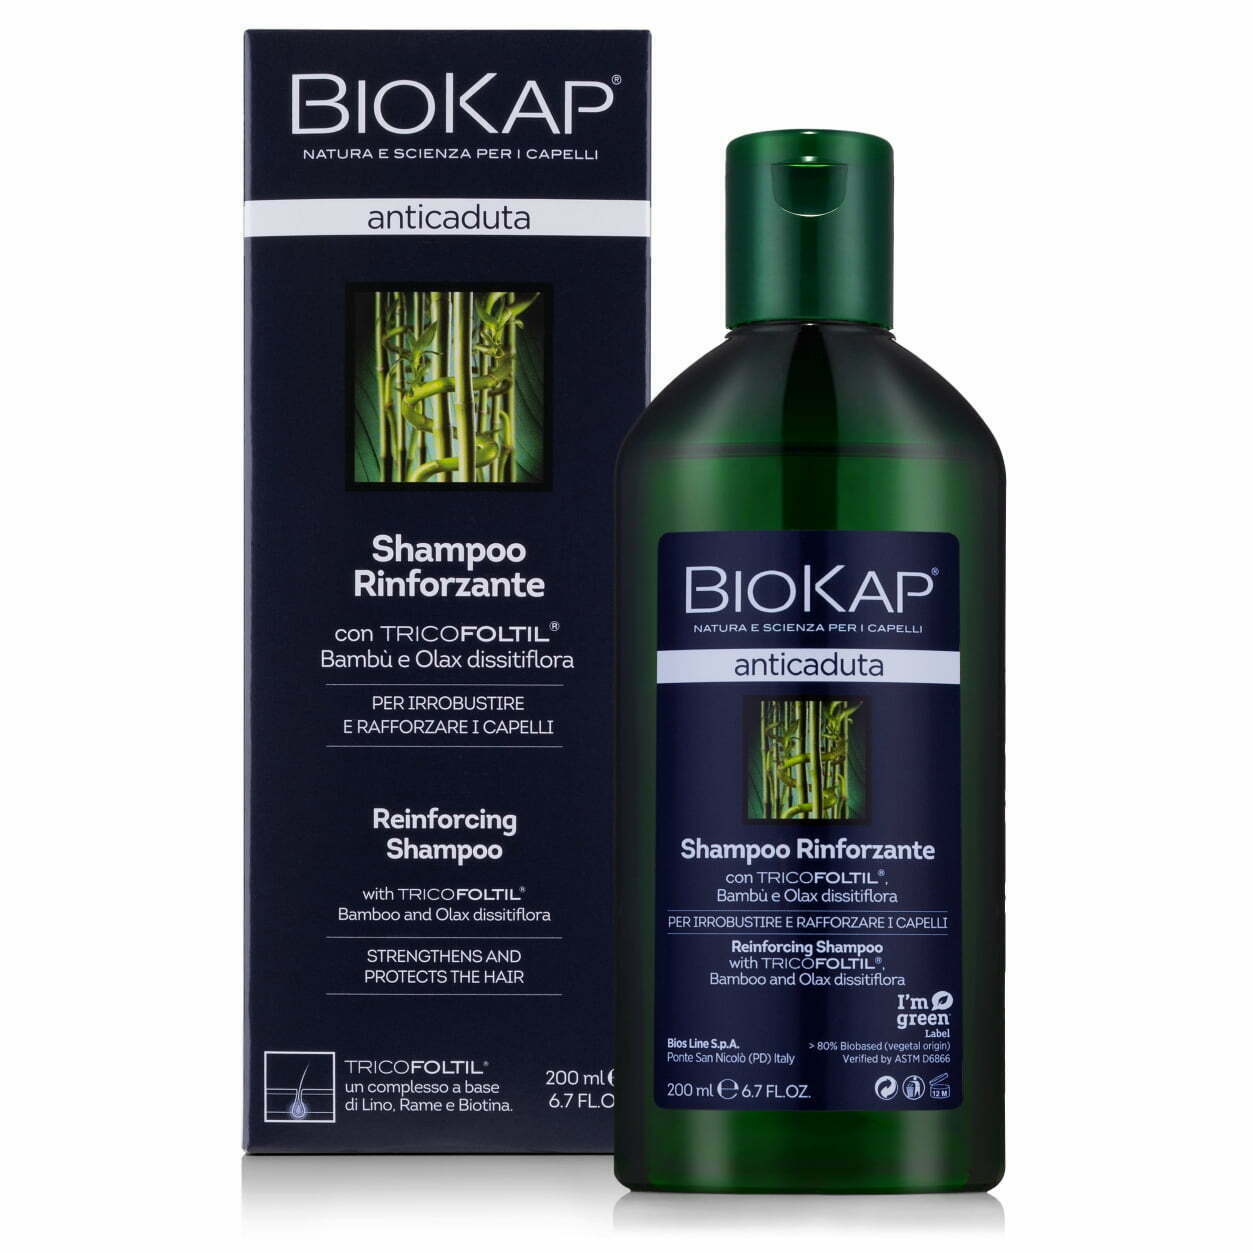 biokap szampon na wypadanie włosów